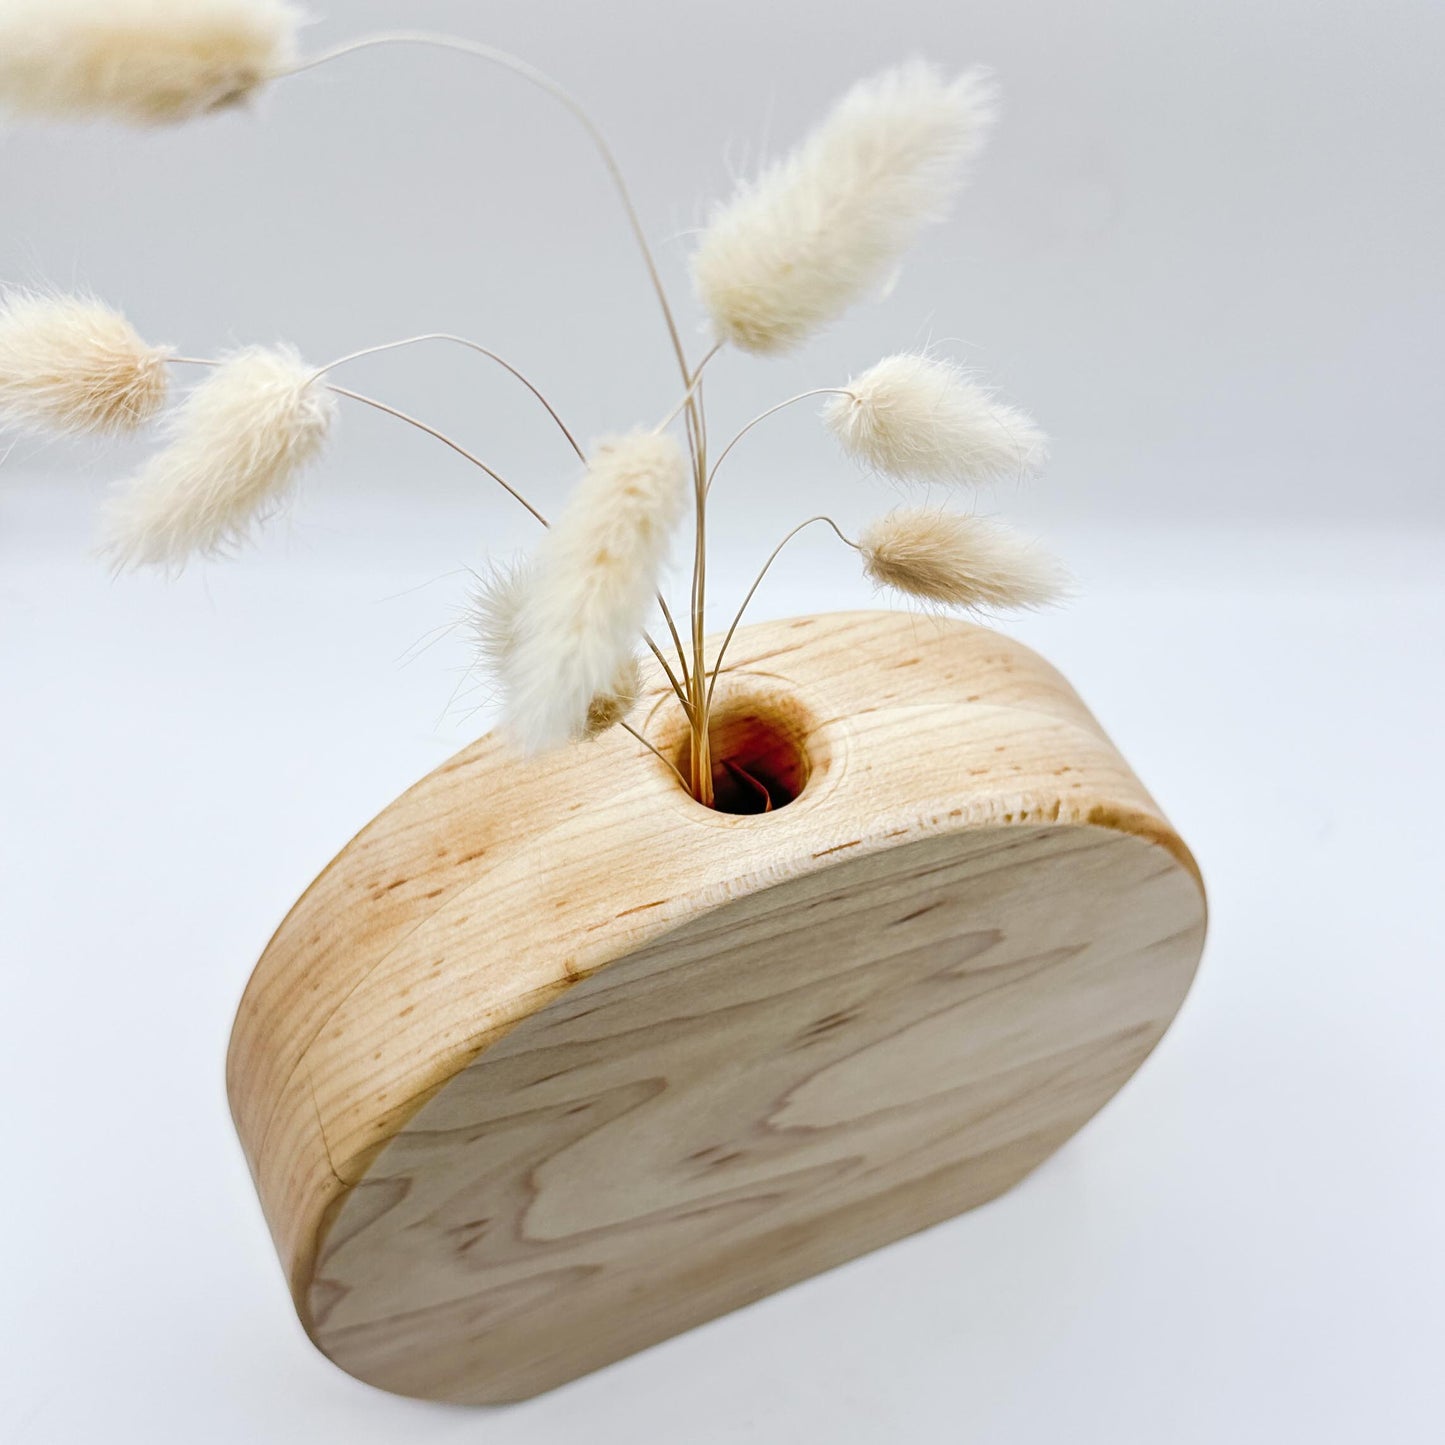 Timber Dry Flower Vases - Rock Maple